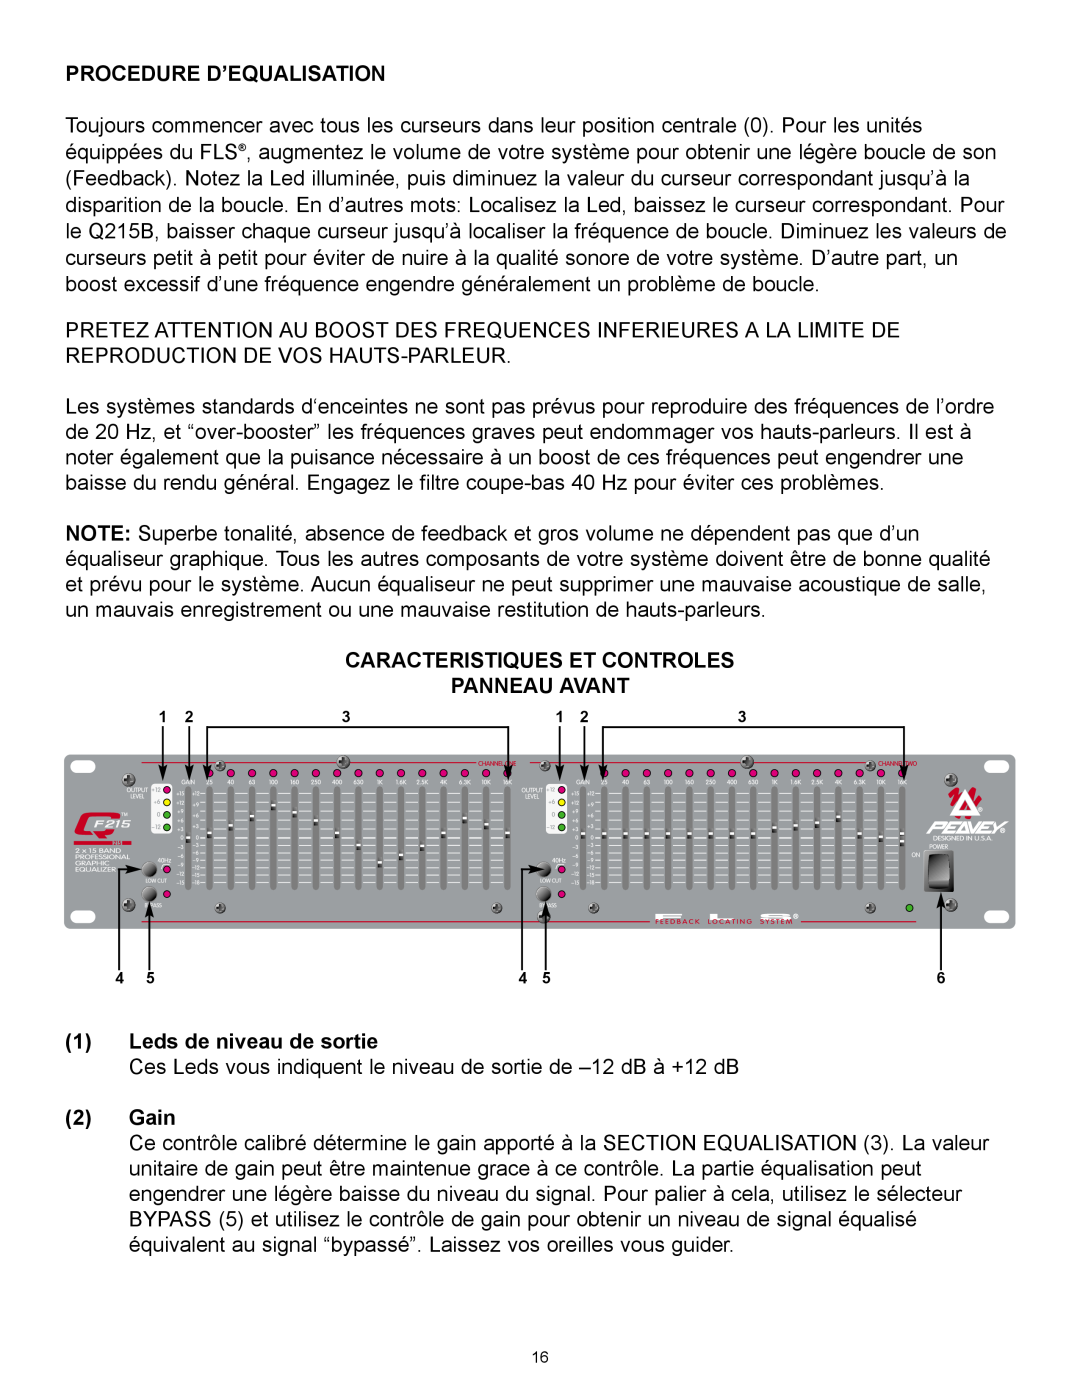 Peavey QF131 manual Procedure D’Equalisation, Caracteristiques Et Controles Panneau Avant, 1Leds de niveau de sortie, 2Gain 